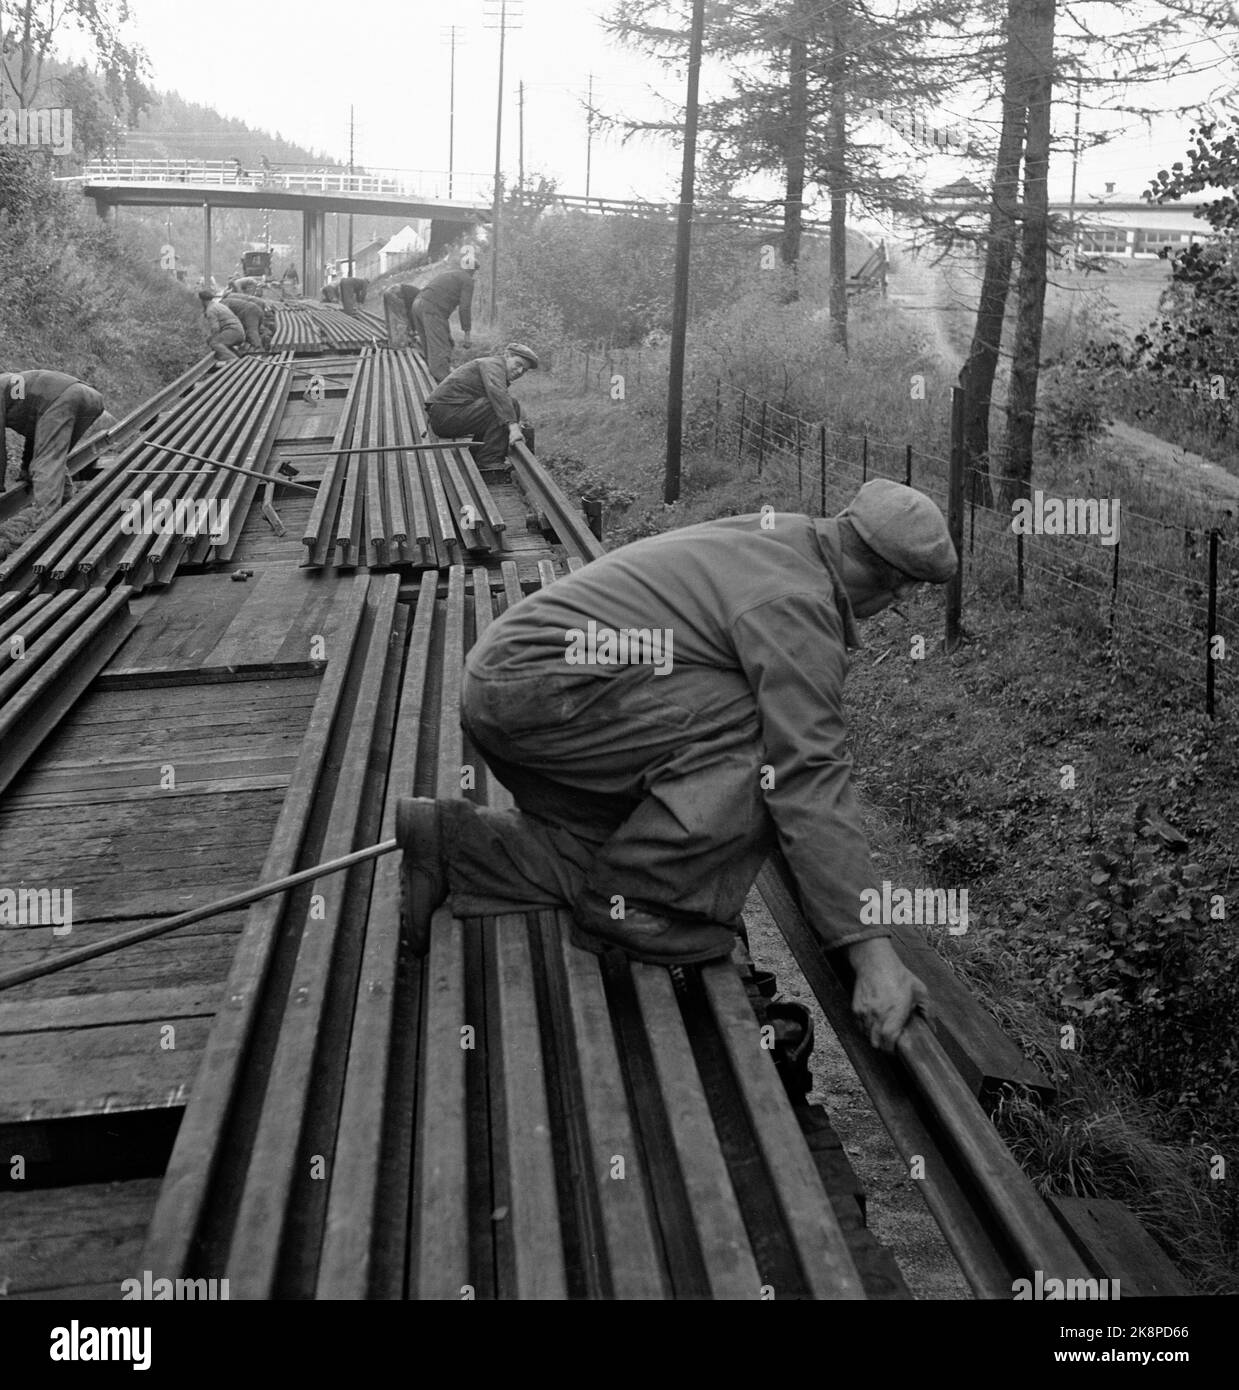 Vestfold September 1949: Die Arbeiten an der Vestfoldbanen-Eisenbahnlinie nähern sich ihrem Ende. Die Arbeiten laufen parallel zu den laufenden Zügen. Hier sind die Bahnarbeiter im Gleiszug dabei, Schienen auszulegen. Die Schienen wurden neun und neun zusammengehakt und vom Wagen gezogen, während der Eisenbahnzug vorwärts fuhr. Foto: Sverre A. Børretzen / Aktuell / NTB Stockfoto